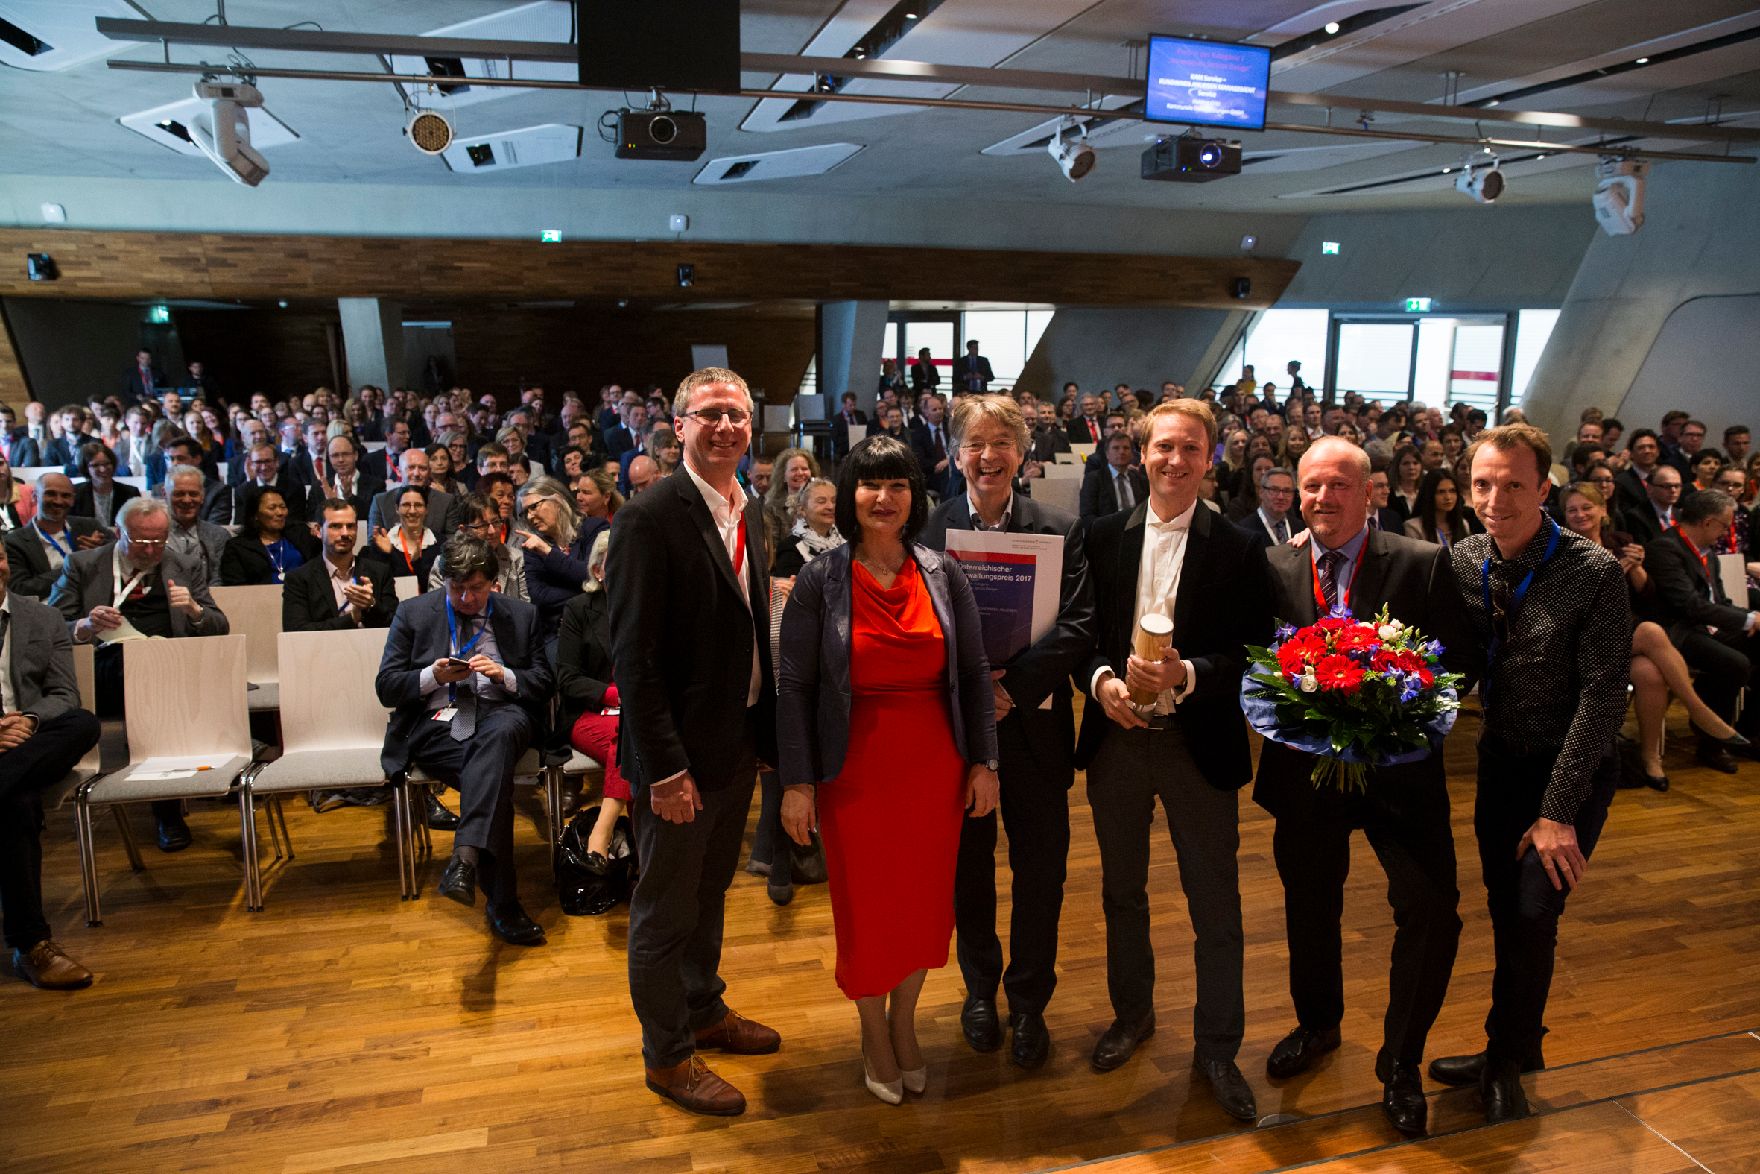 Am 24. April 2017 fand die Überreichung des Österreichischen Verwaltungspreises 2017 statt.